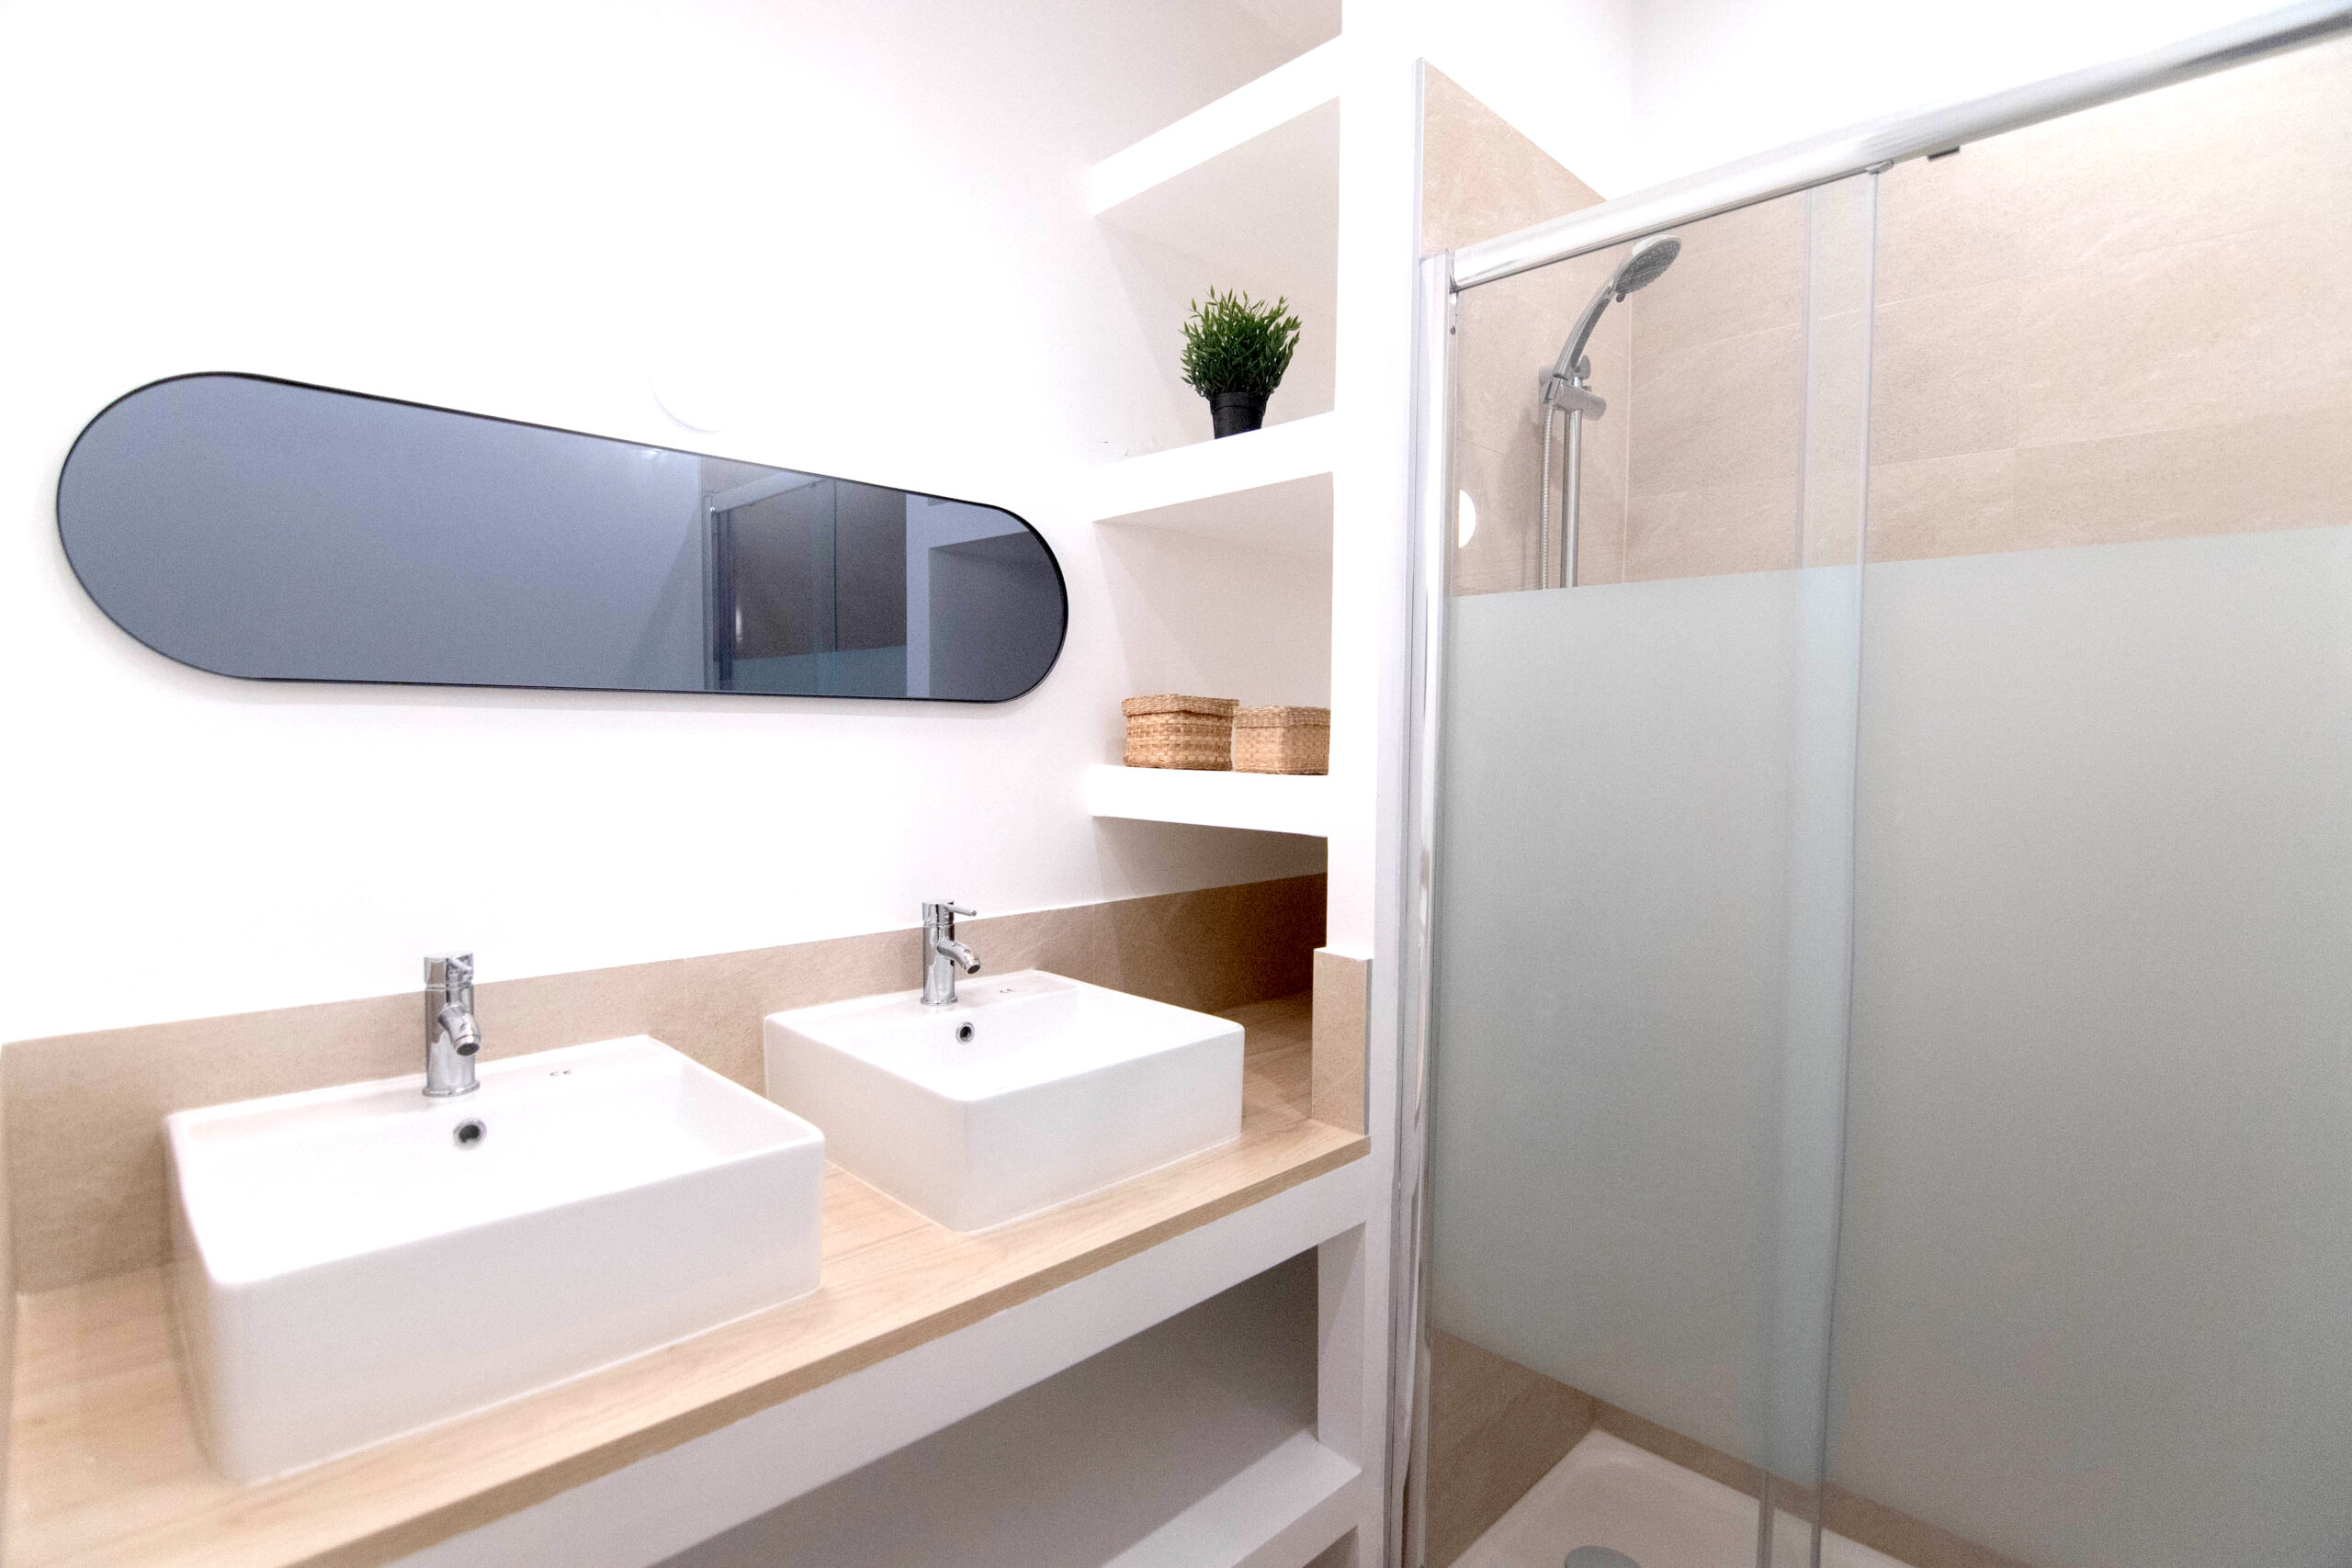 Novaclem - salle de bain Colocation Charras après travaux - Investissement Marseille